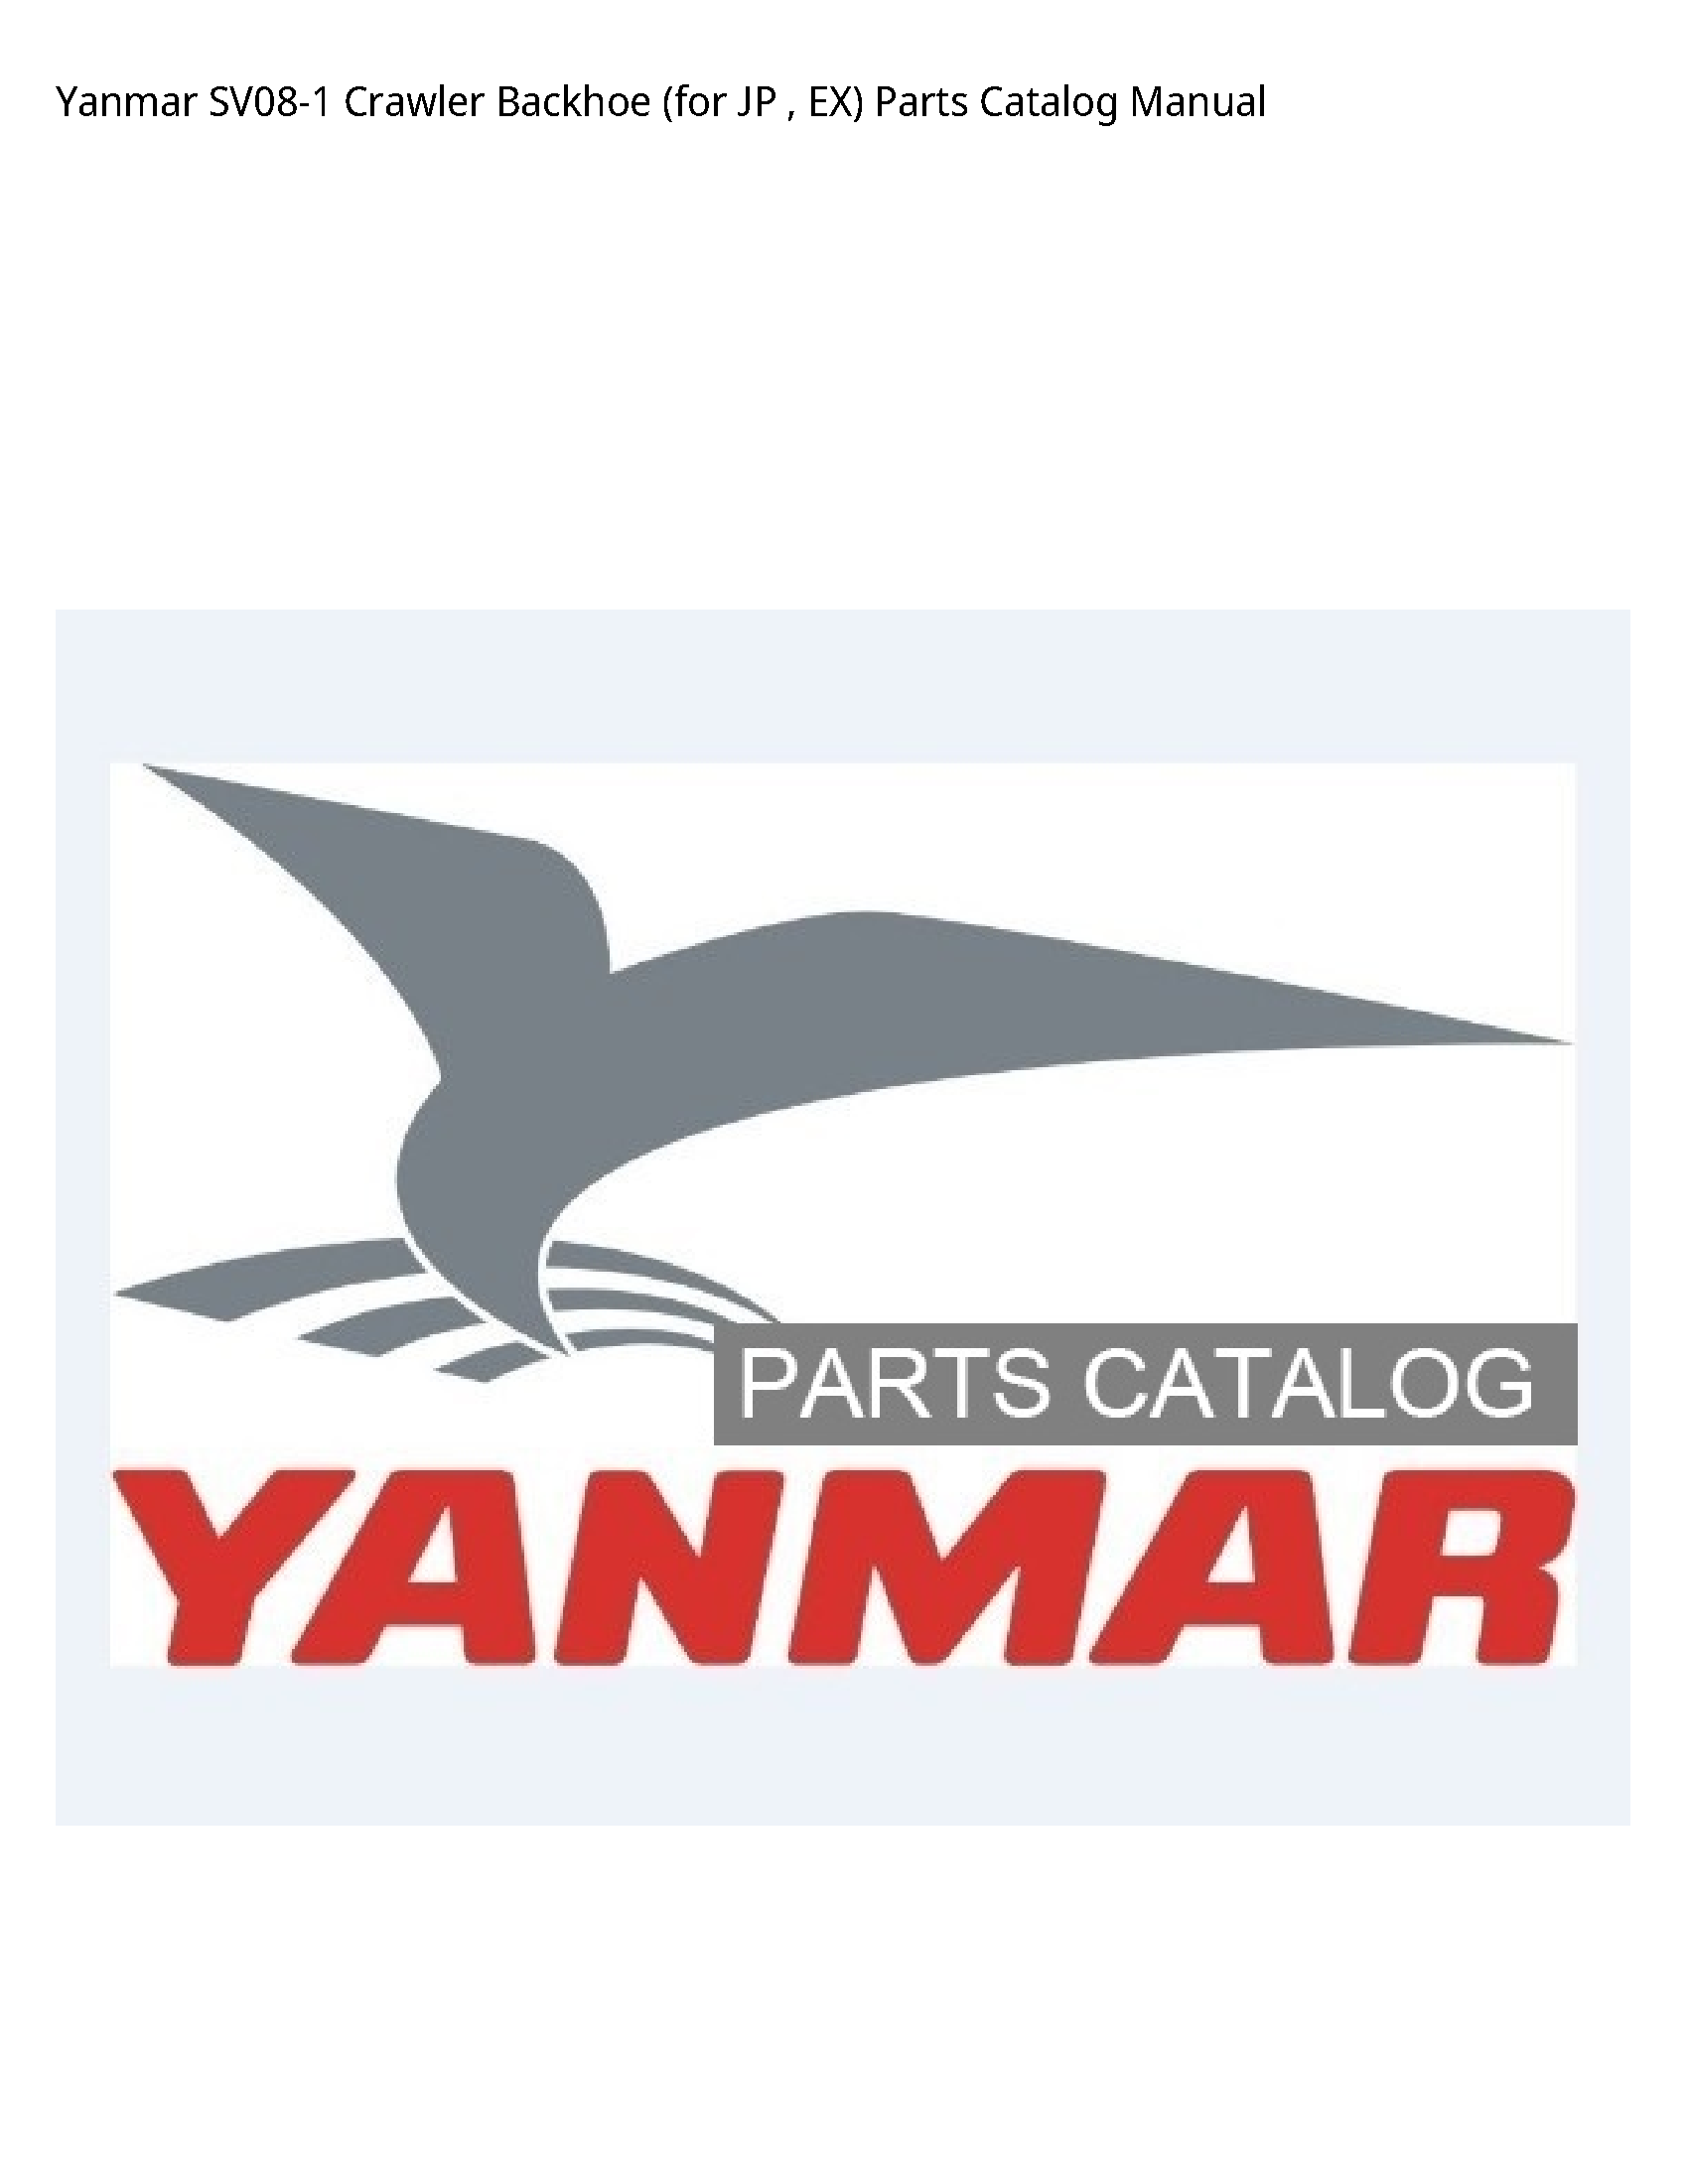 Yanmar SV08-1 Crawler Backhoe (for JP EX) Parts Catalog manual